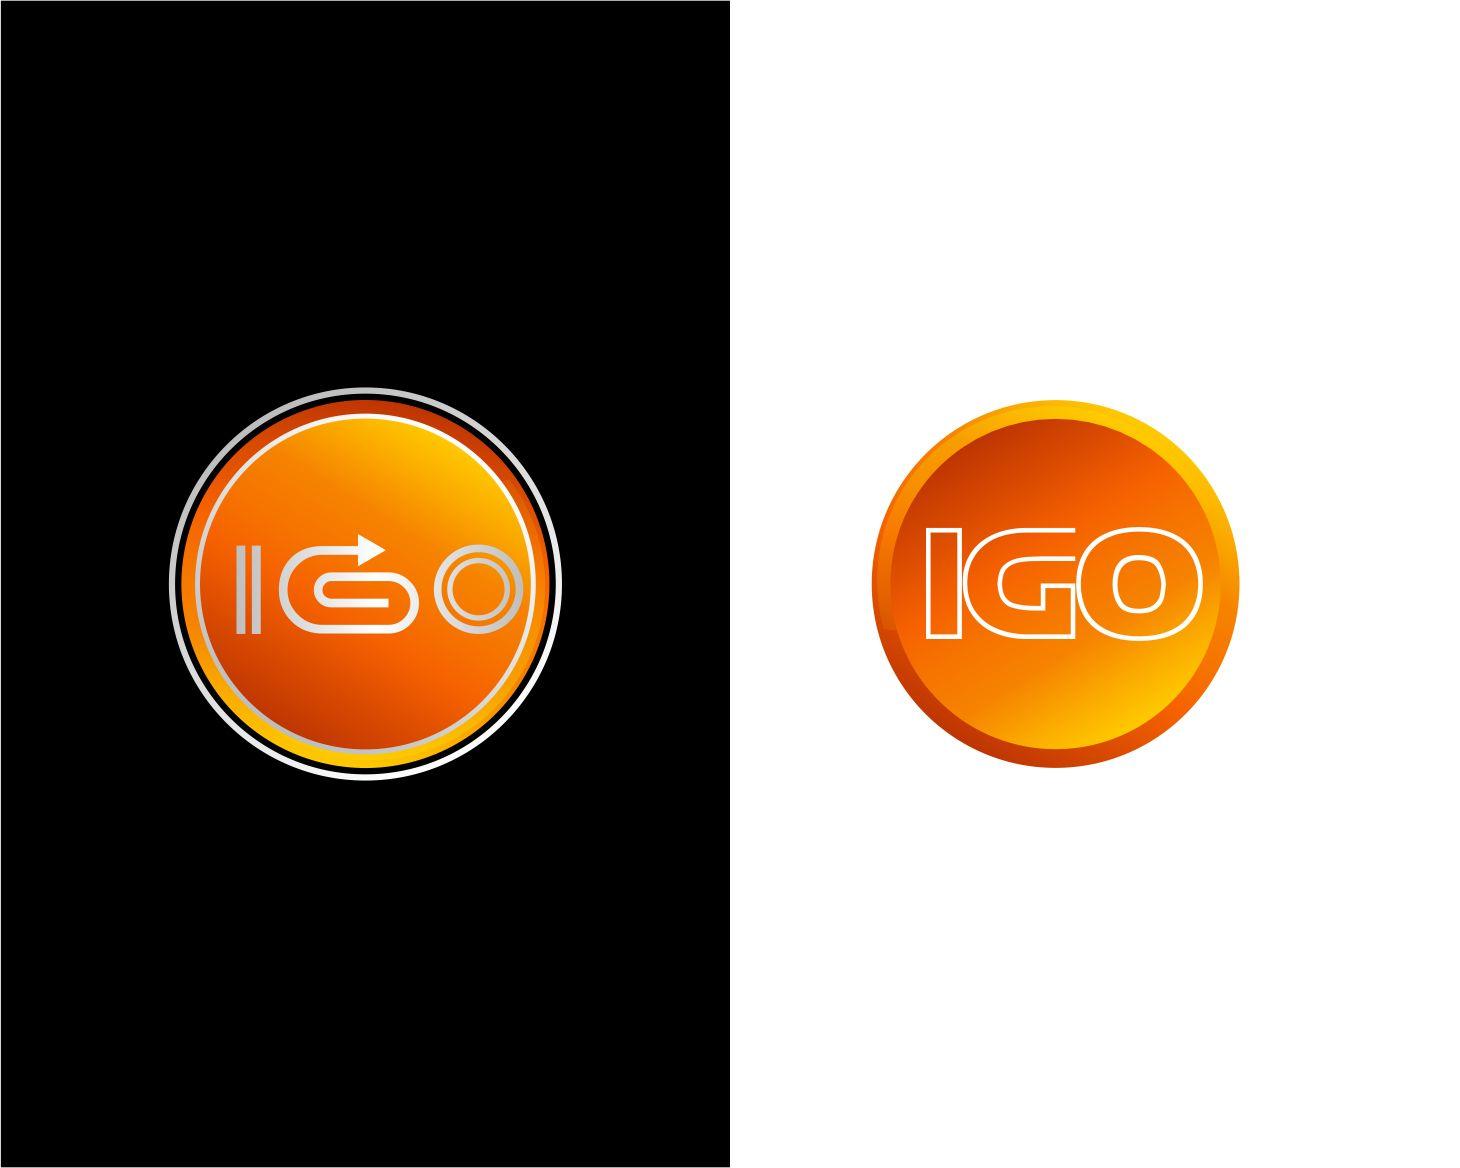 Igo Logo - Logo Design Contest for iGo